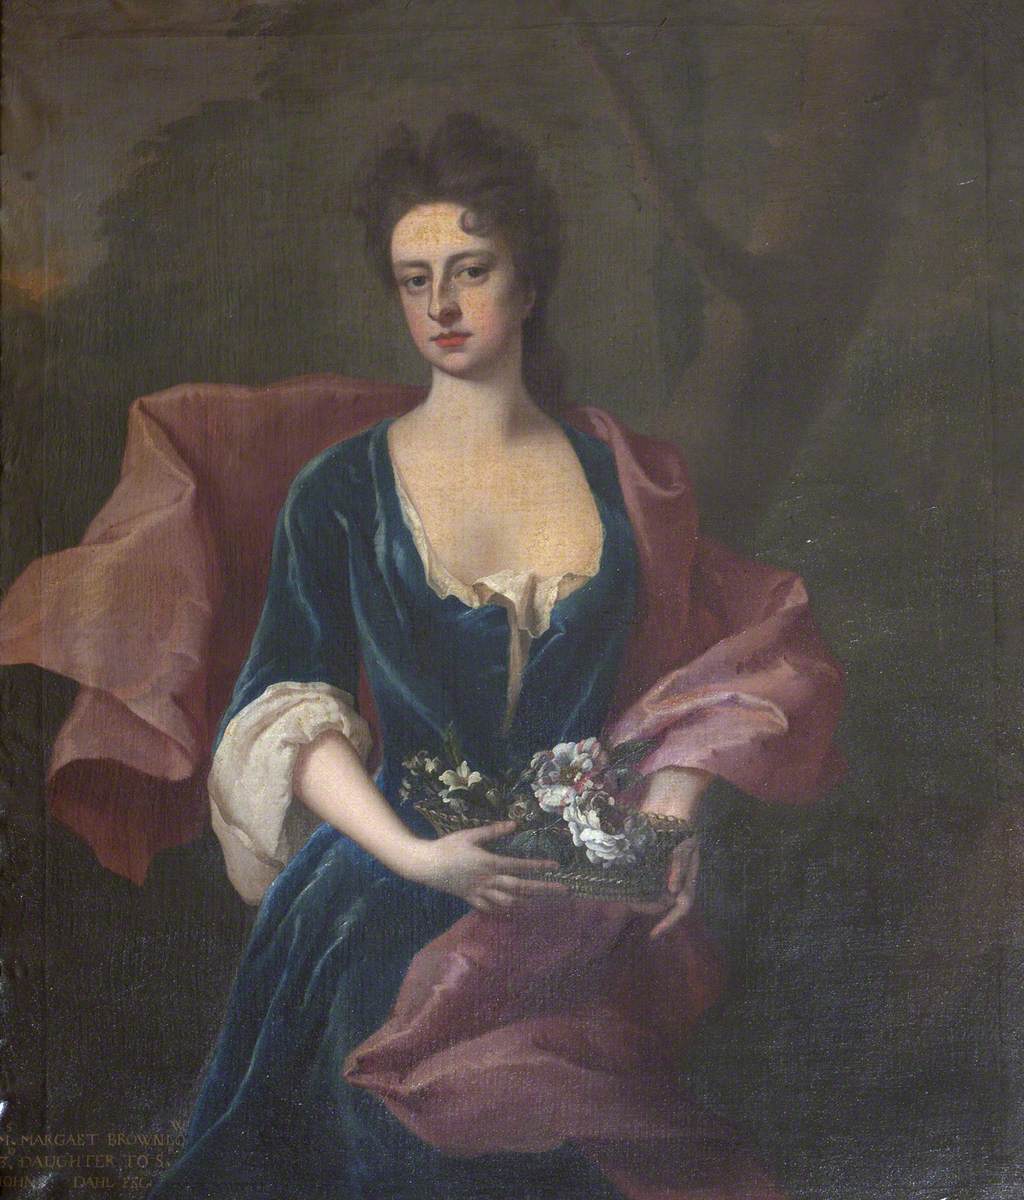 Margaret Brownlow (1687–1710)